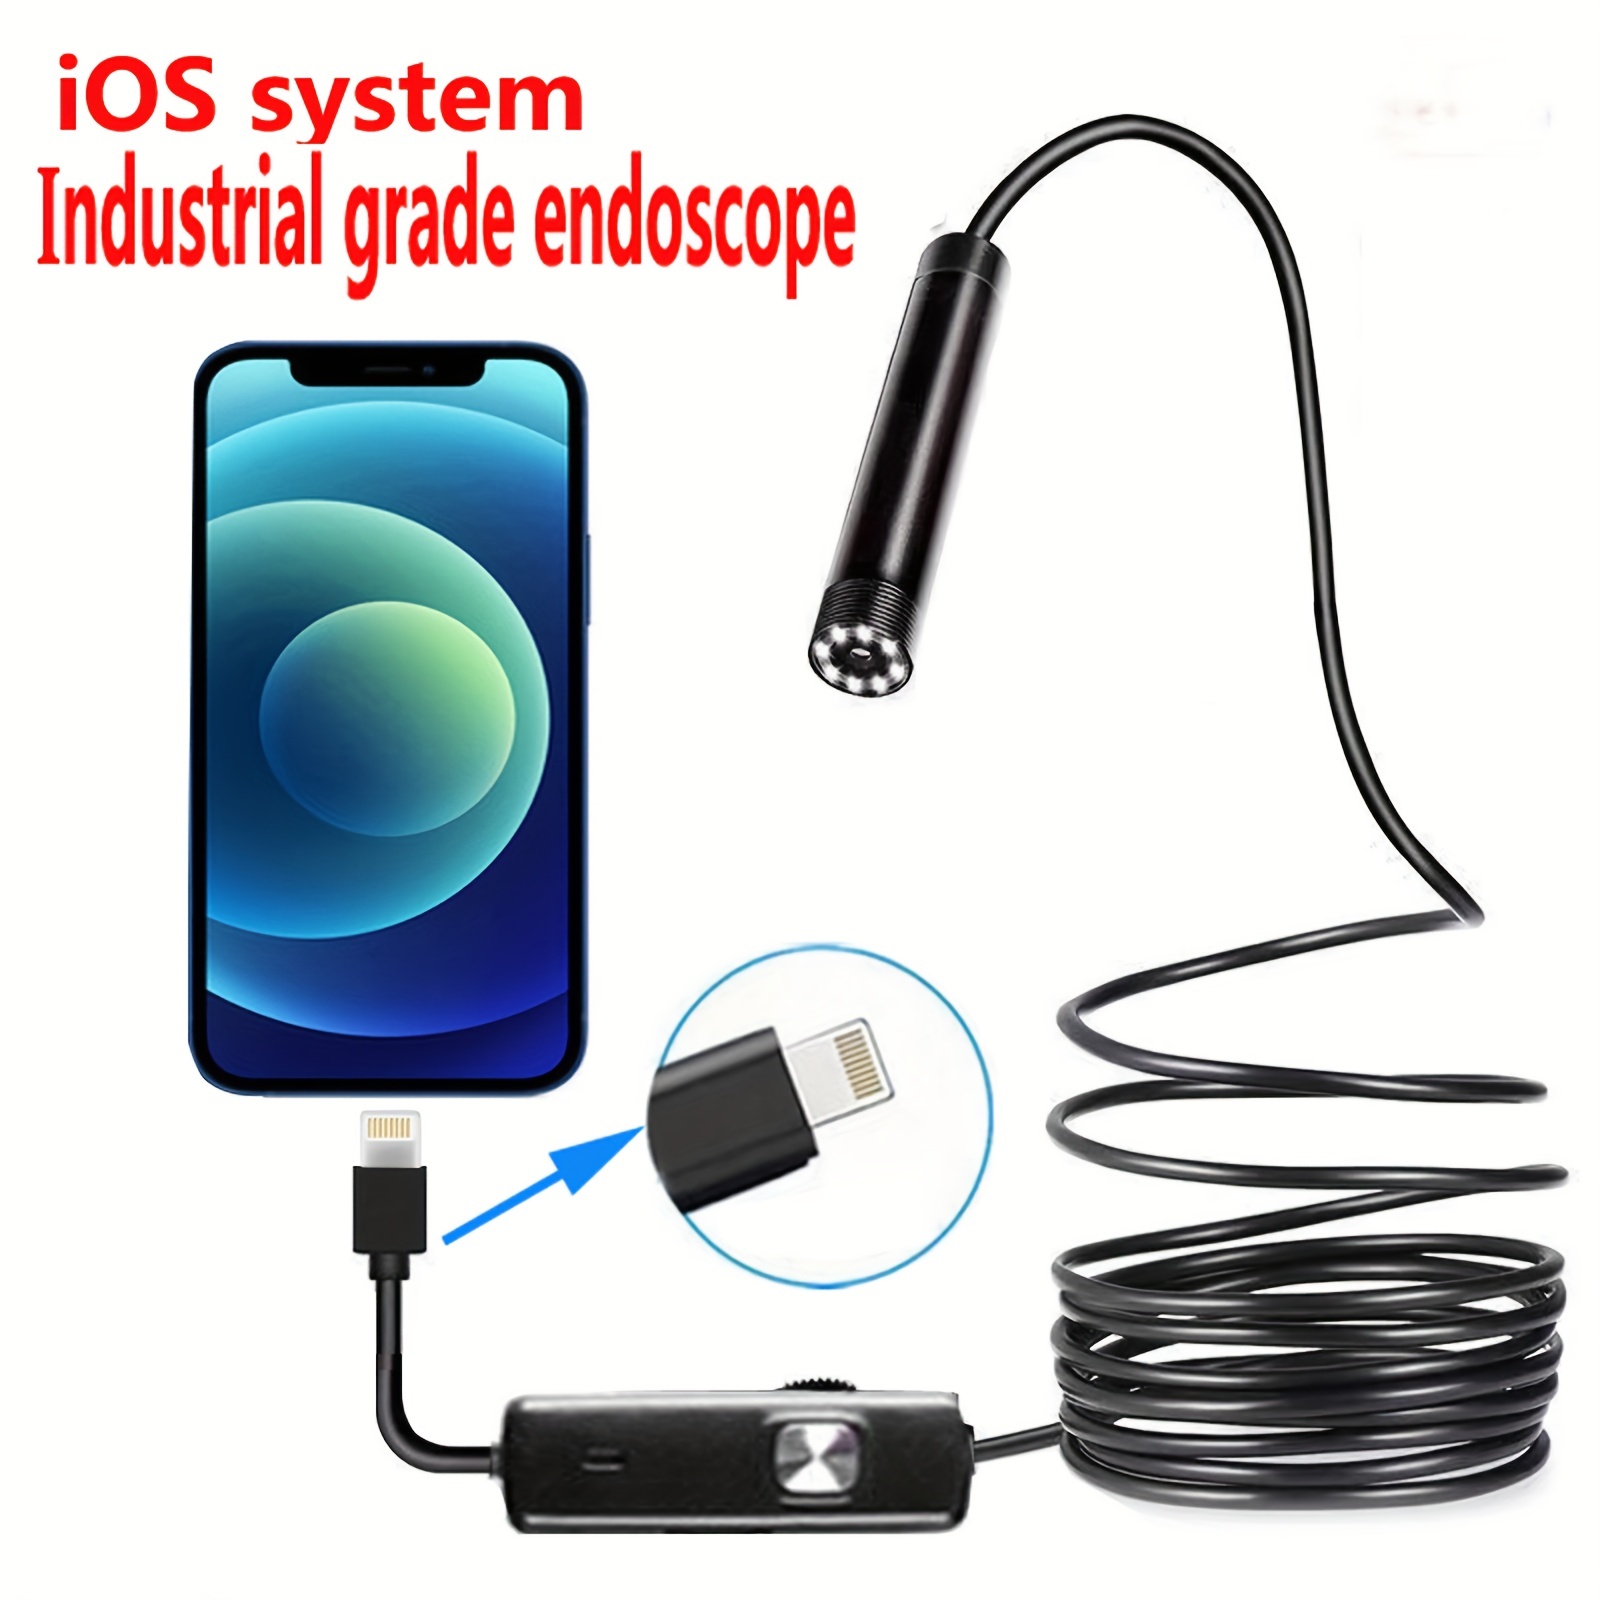  Iphone Endoscope